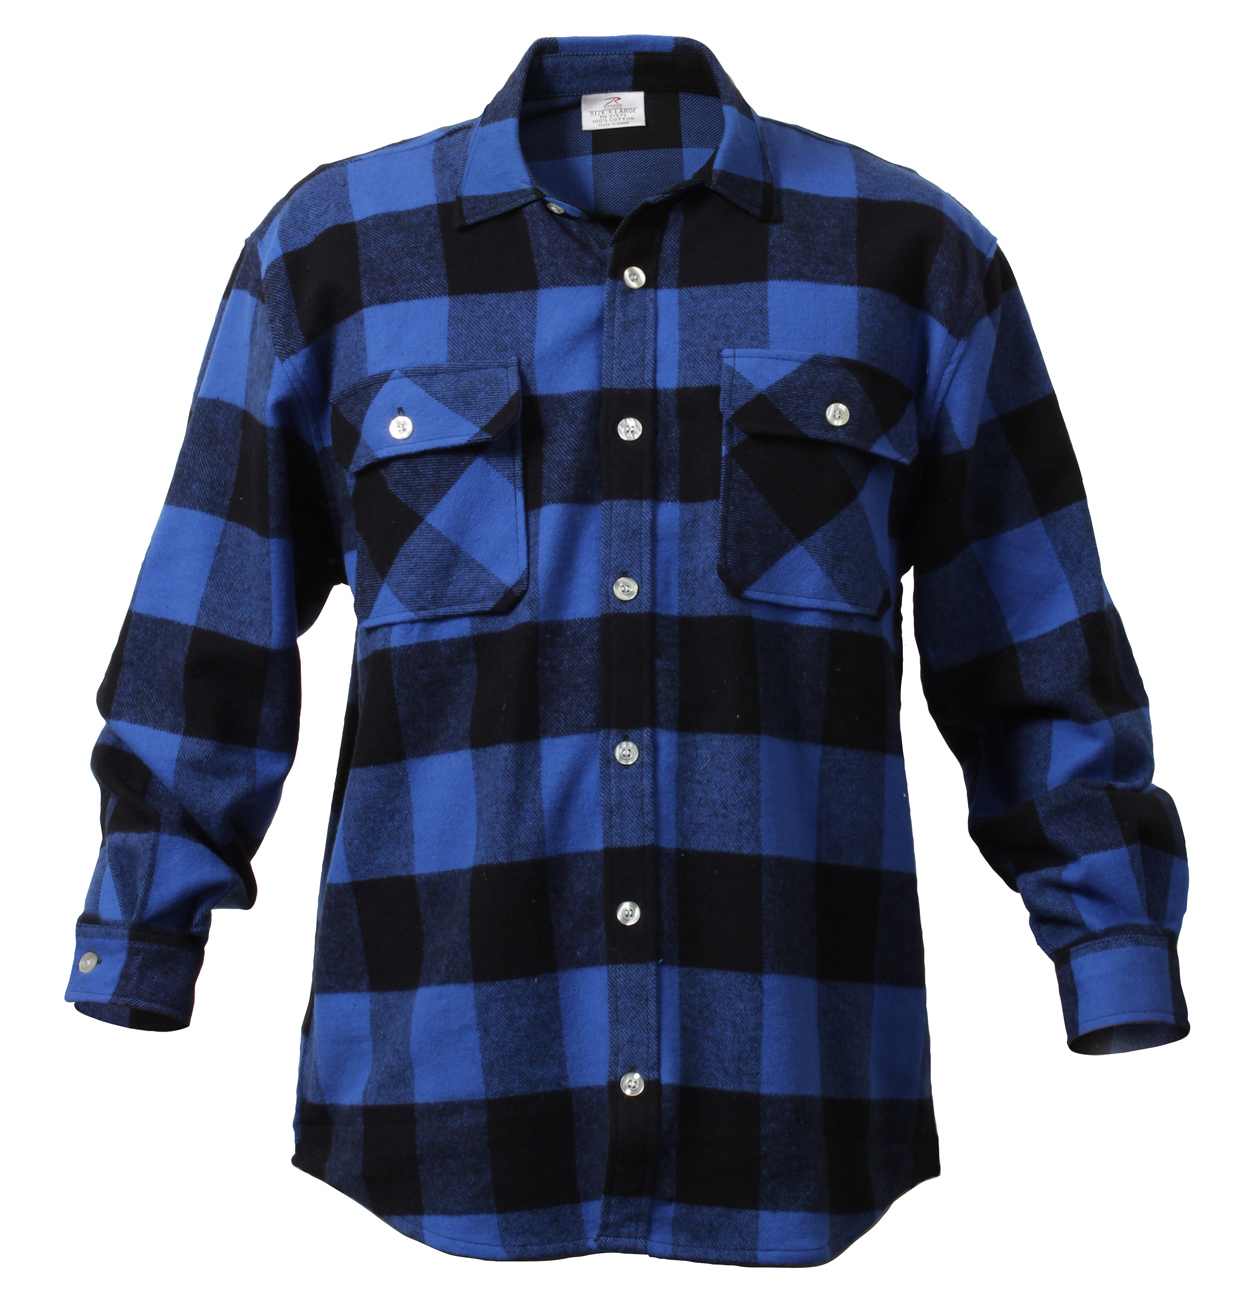 Rothco Extra Heavyweight Buffalo Plaid Flannel Shirt, Blue Plaid, XL - image 1 of 6